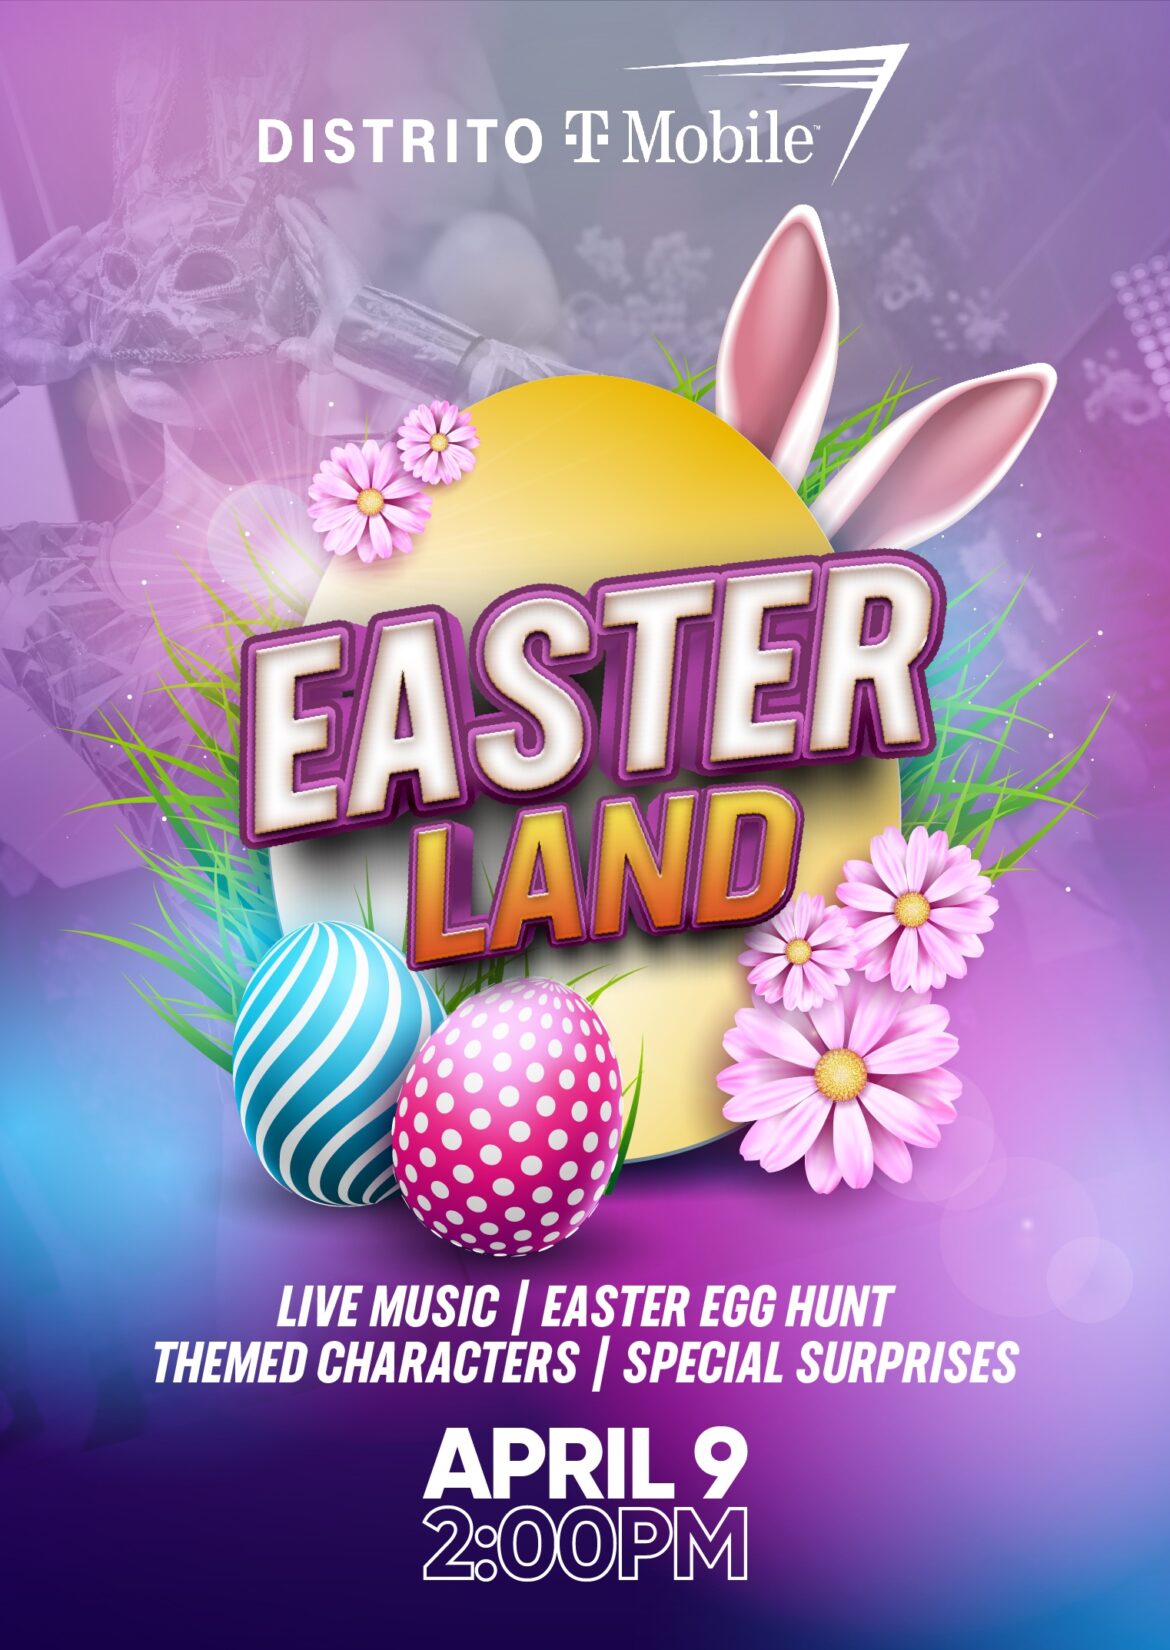 Distrito T-Mobile celebra este Domingo de Pascua con “Easter Land”